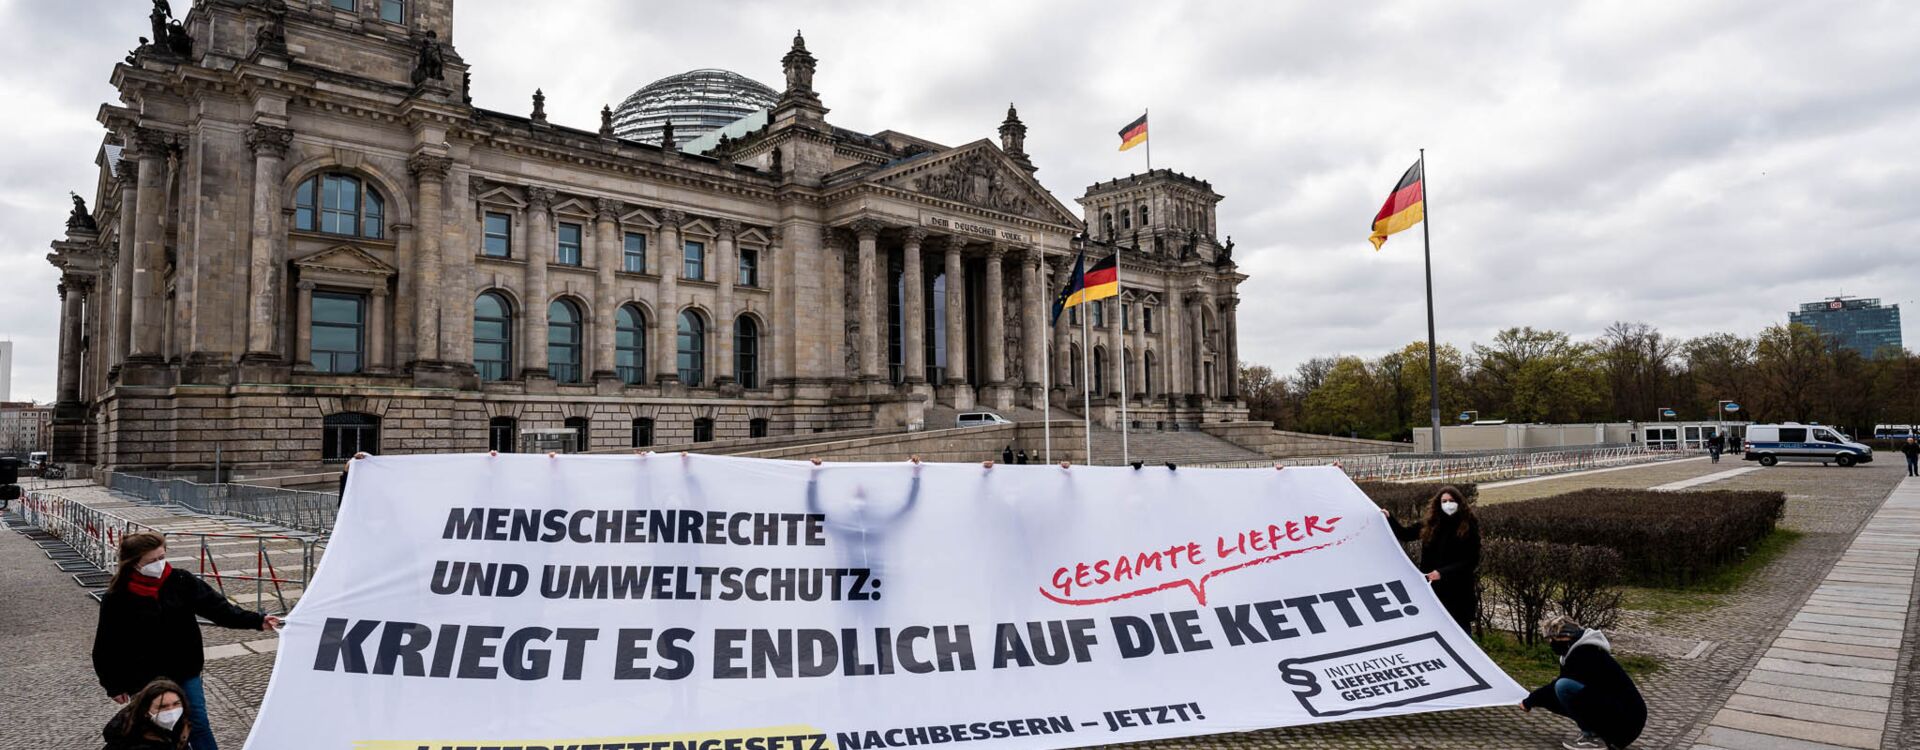 Transparent vor dem Reichstagsgebäude: Menschenrechte und Umweltschutz: Kriegt es endlich auf die Lieferkette!